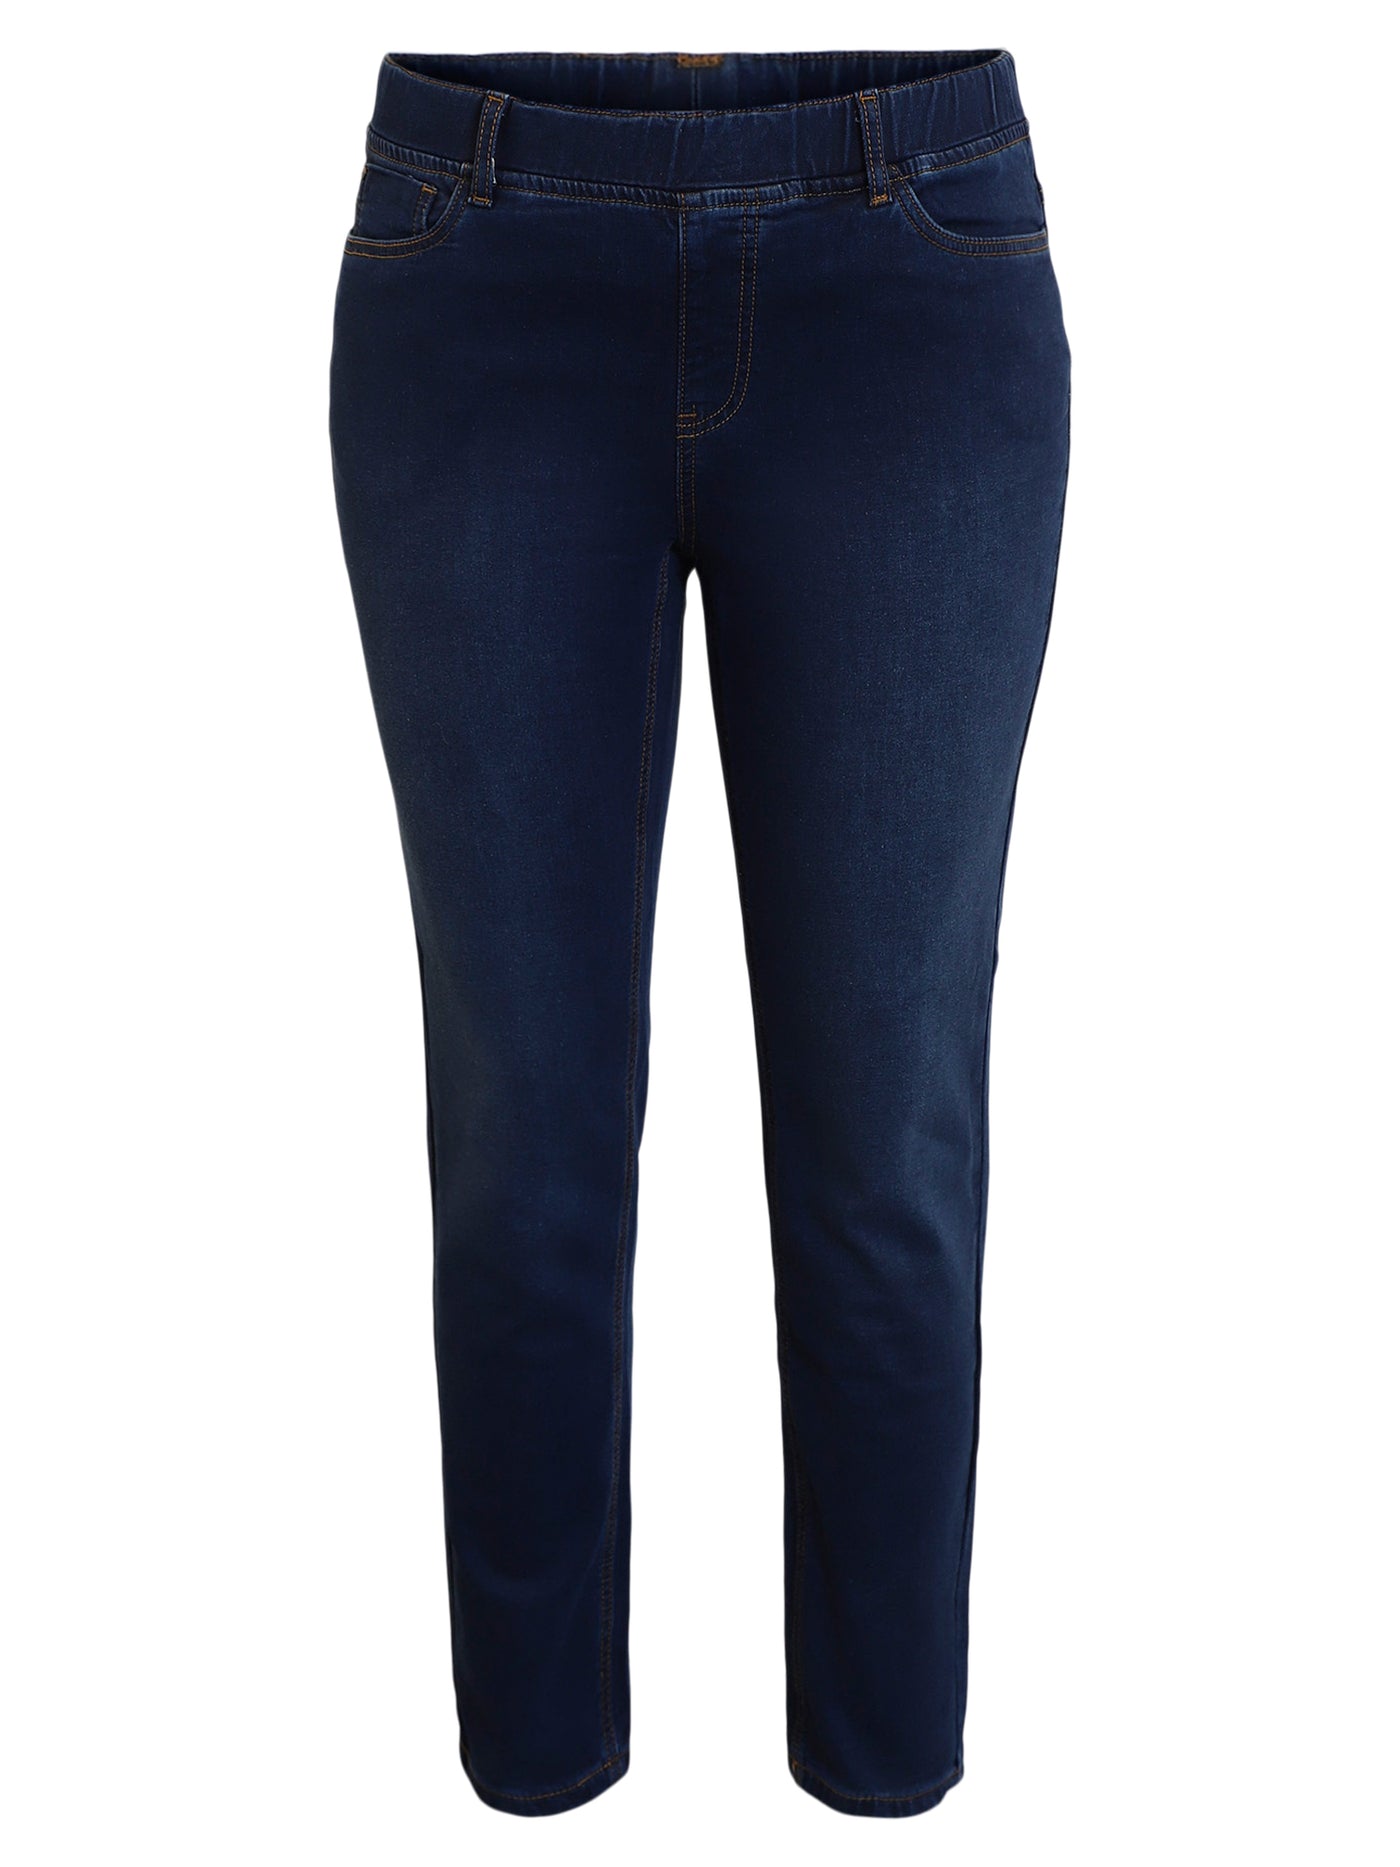 Jeans, Slim Leg, Sofia - Dark Blue Denim